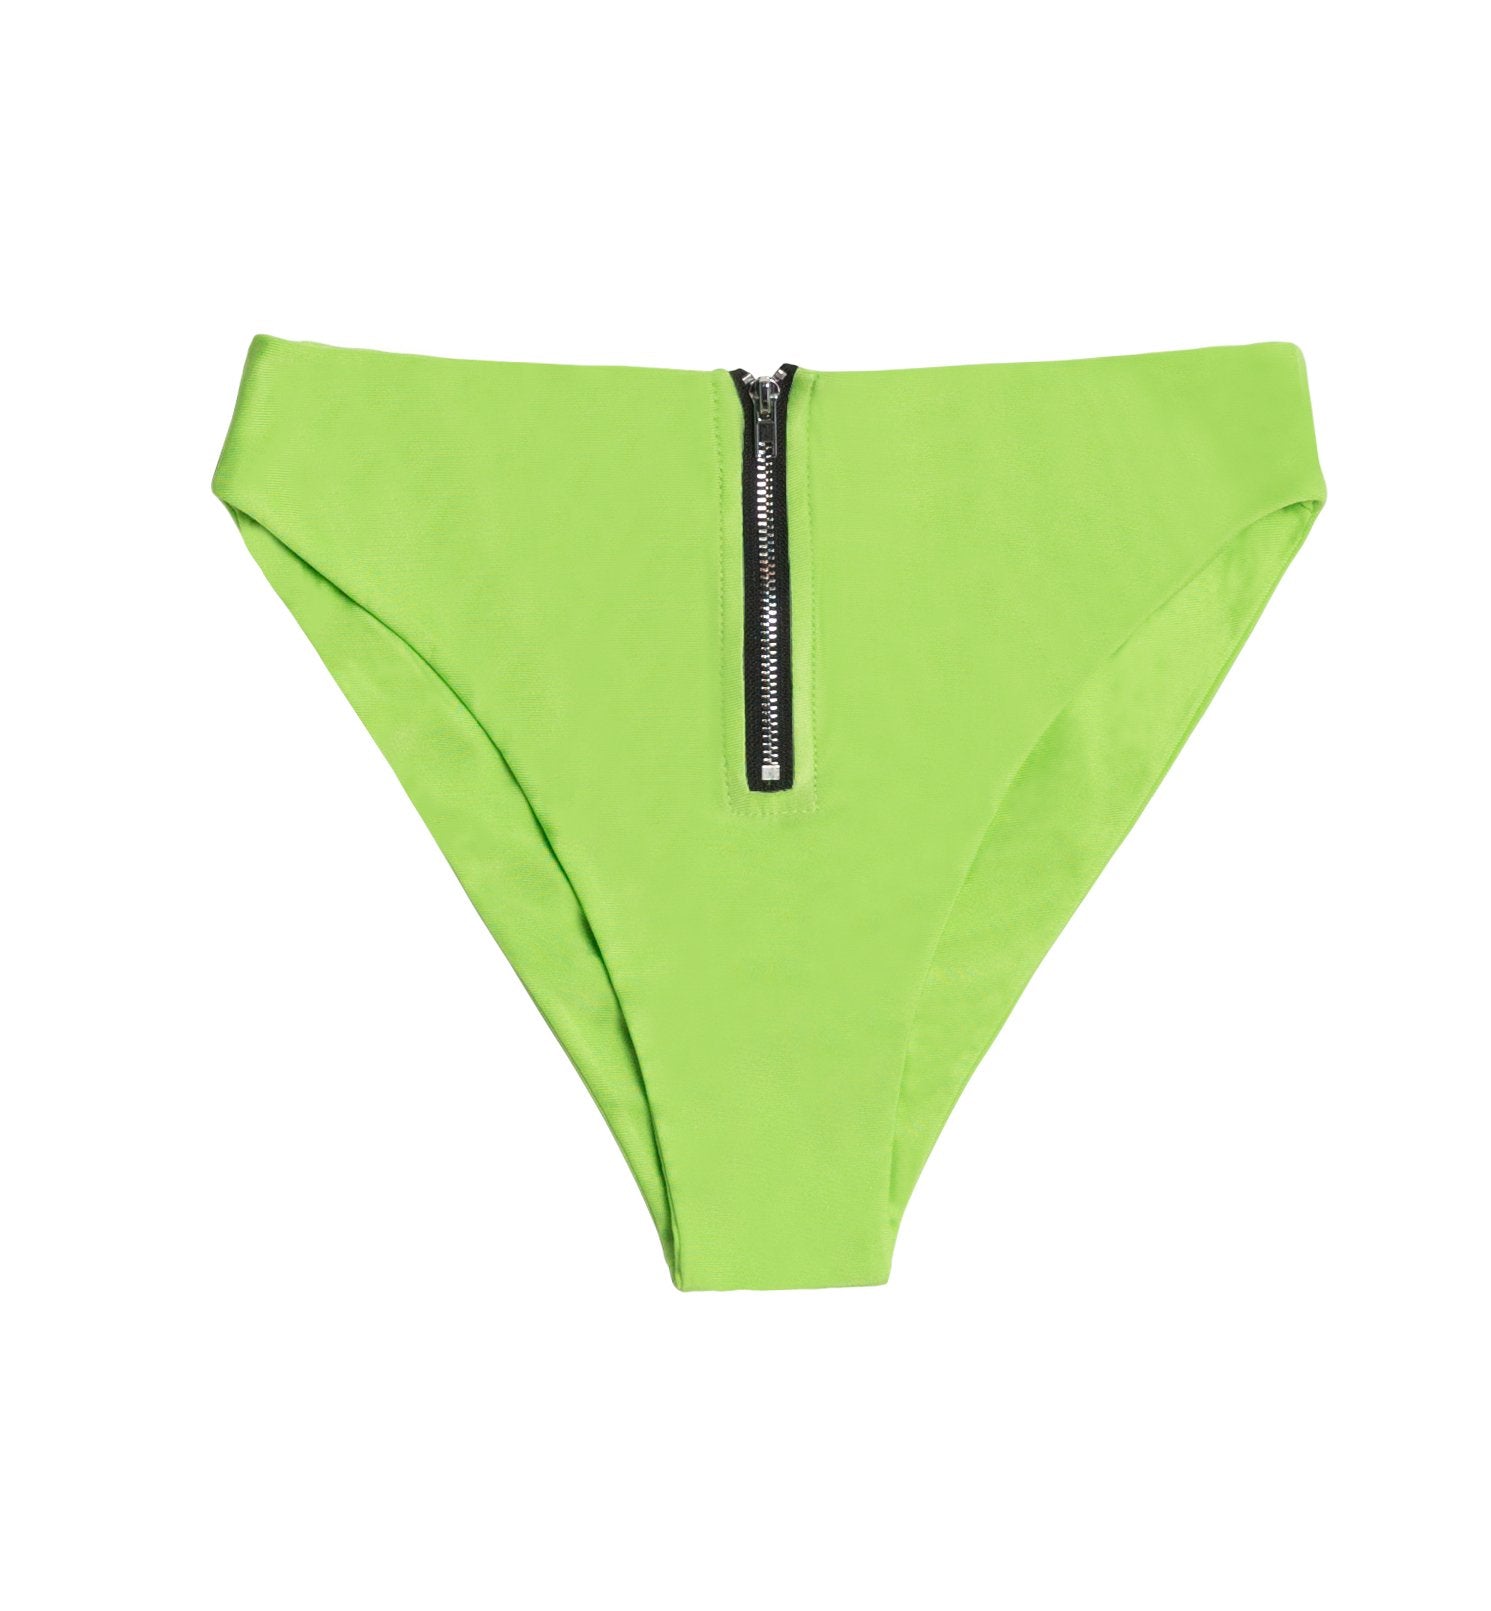 Green high waisted zipper bottoms